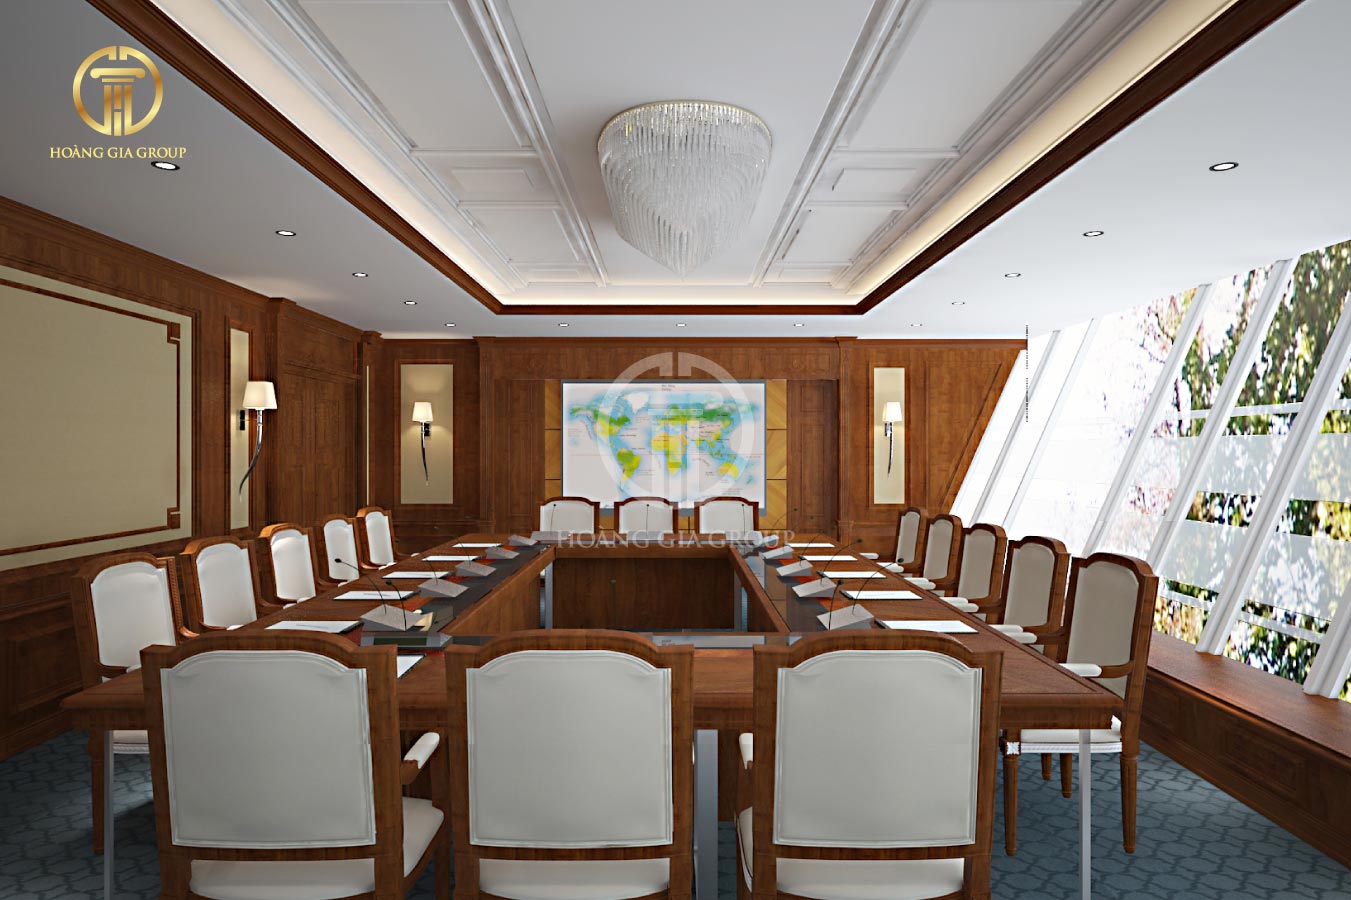 Phòng họp với cửa kính được thiết kế to nhằm lấy ánh sáng tự nhiên